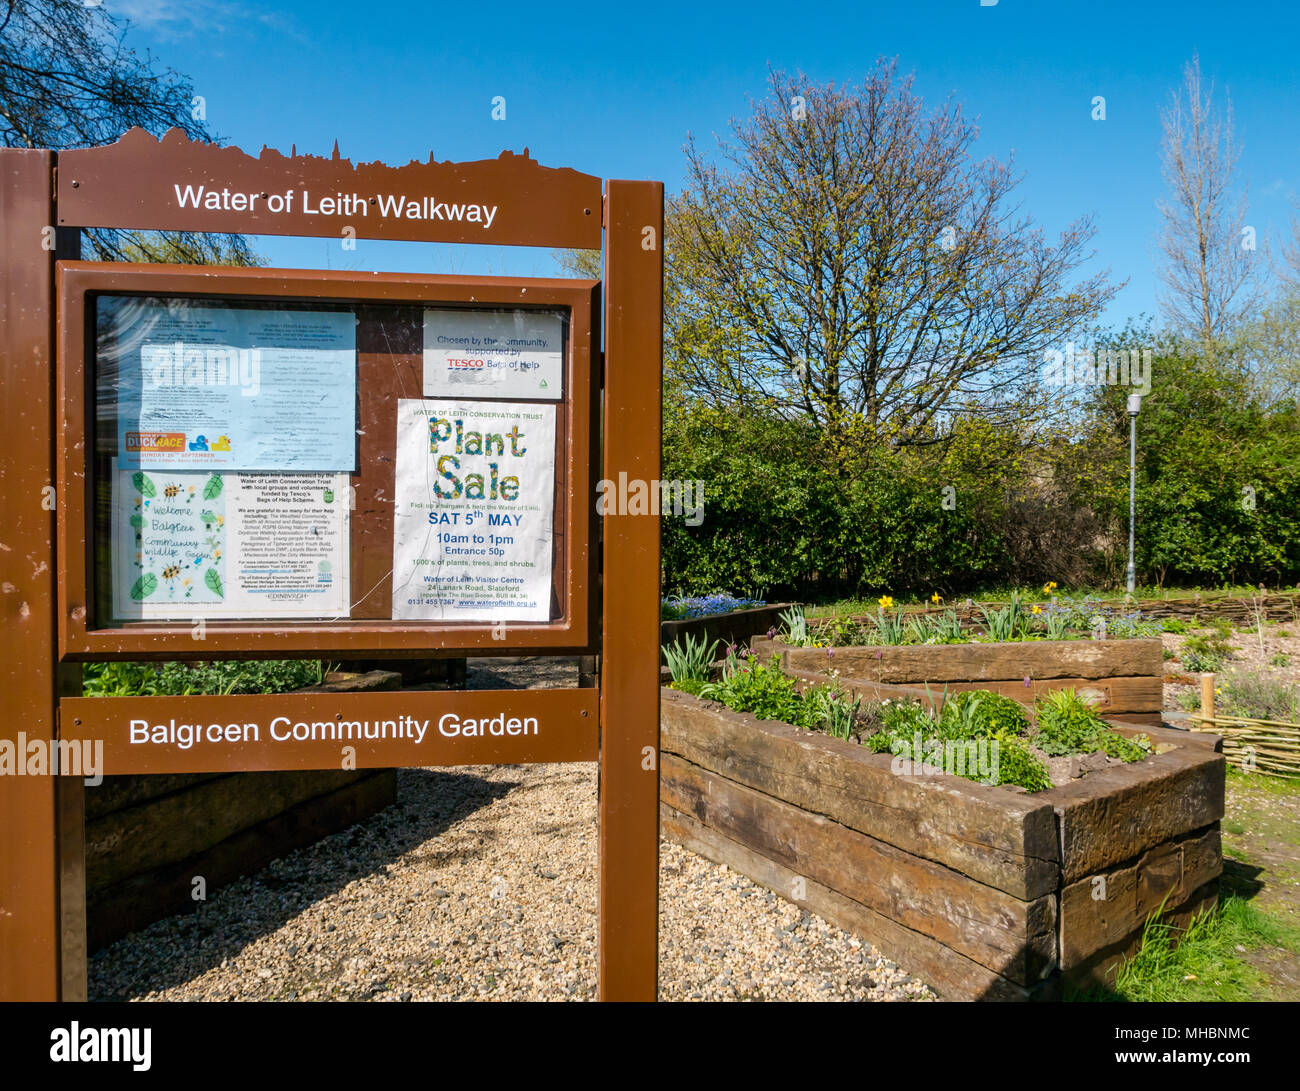 Balgreen gemeinschaft Garten Wasser des Leith, Edinburgh, Schottland Großbritannien durch Wasser von Leith Conservation Trust, Freiwilligen; von Tesco Beutel mit Hilfe Regelung finanziert Stockfoto